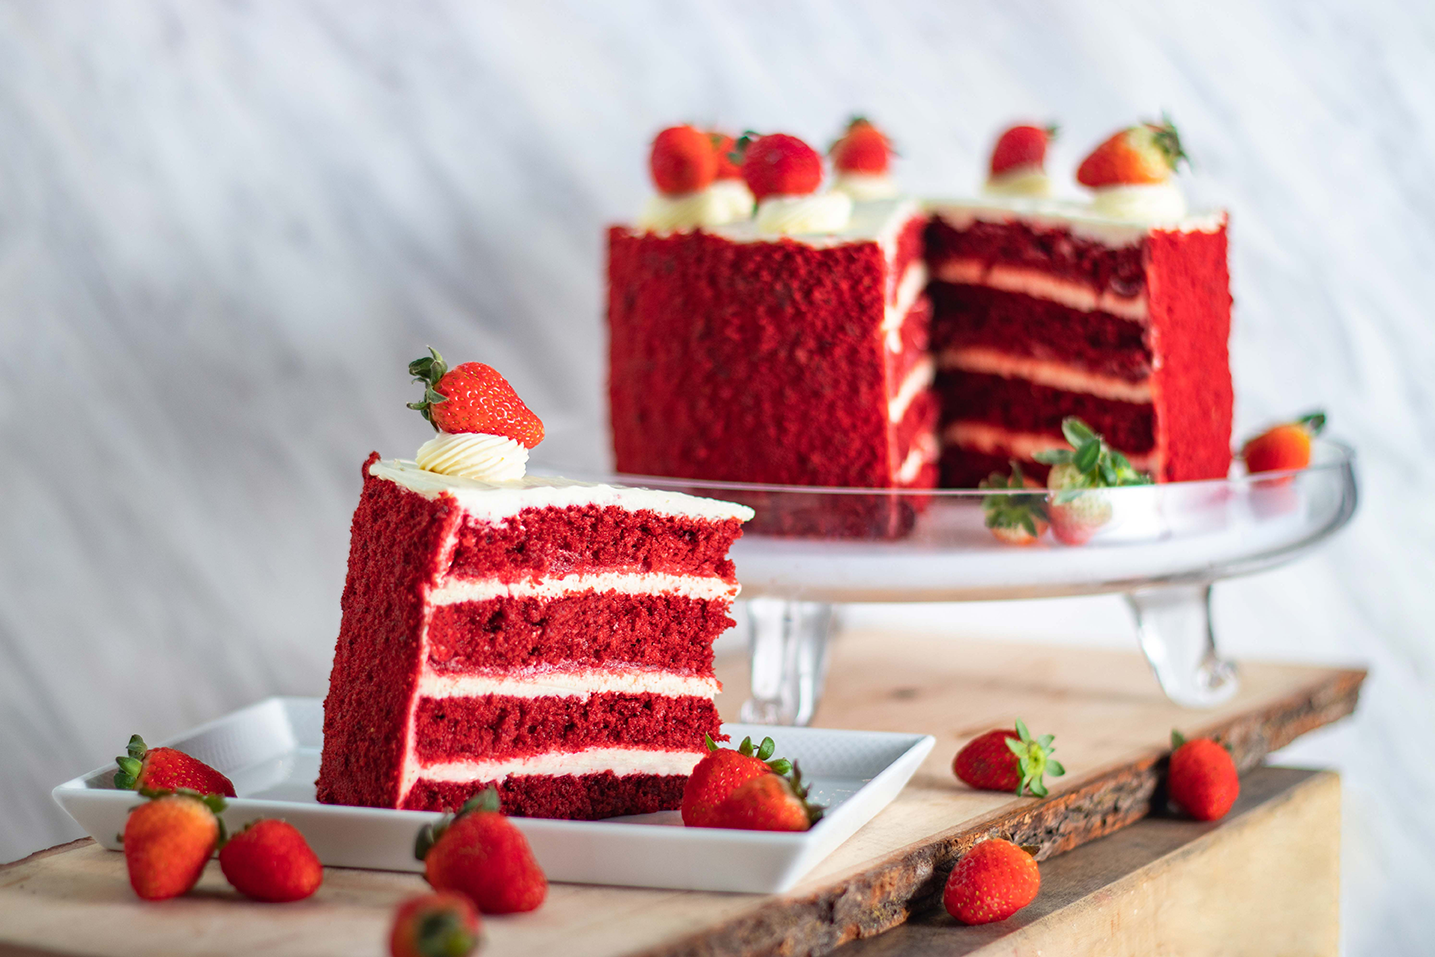 Red Velvet Cake [per slice]